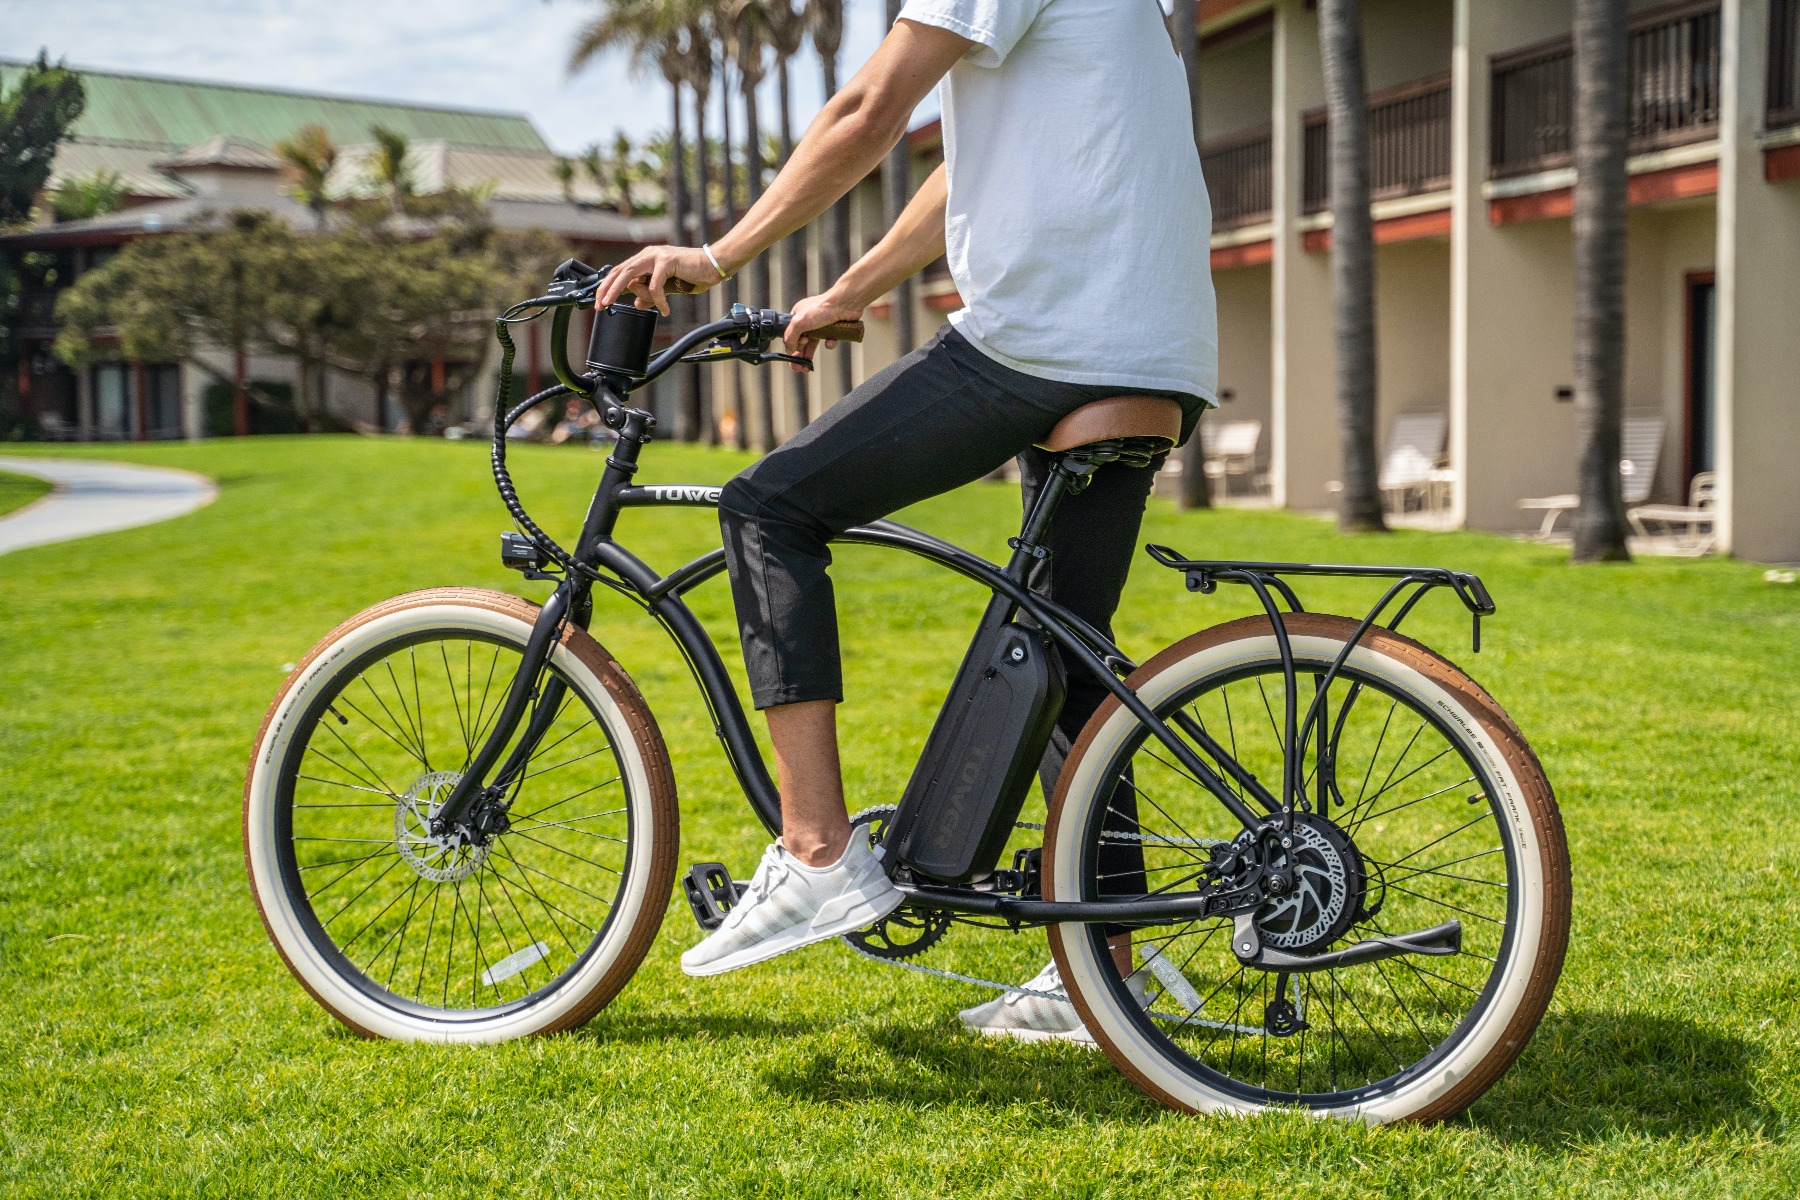 E-bike waar op letten aankoop elektrische fiets?